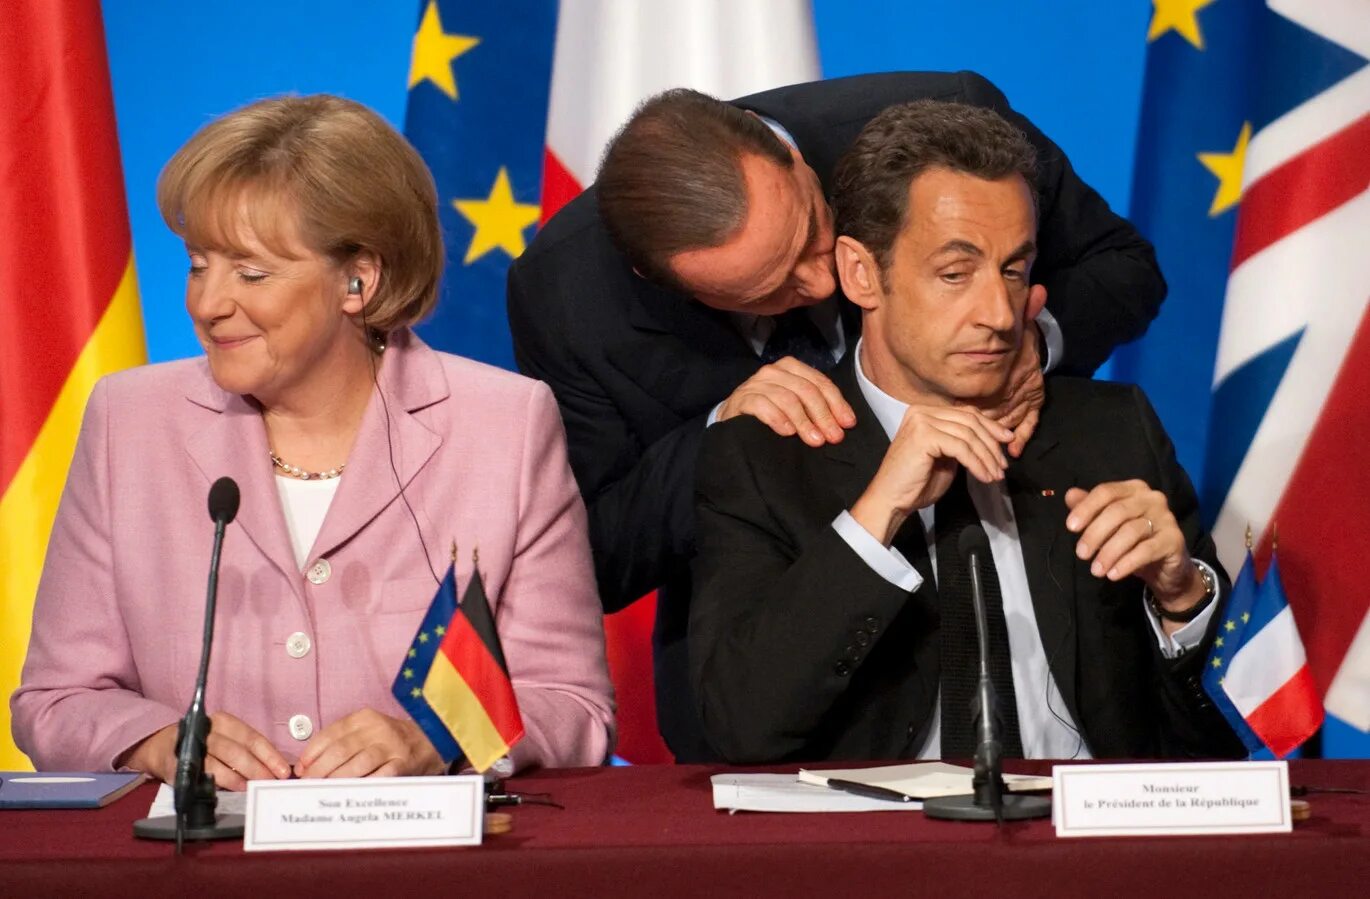 Европейские политики. Политика фото. Политический фоторепортаж. Поцелуи политиков.